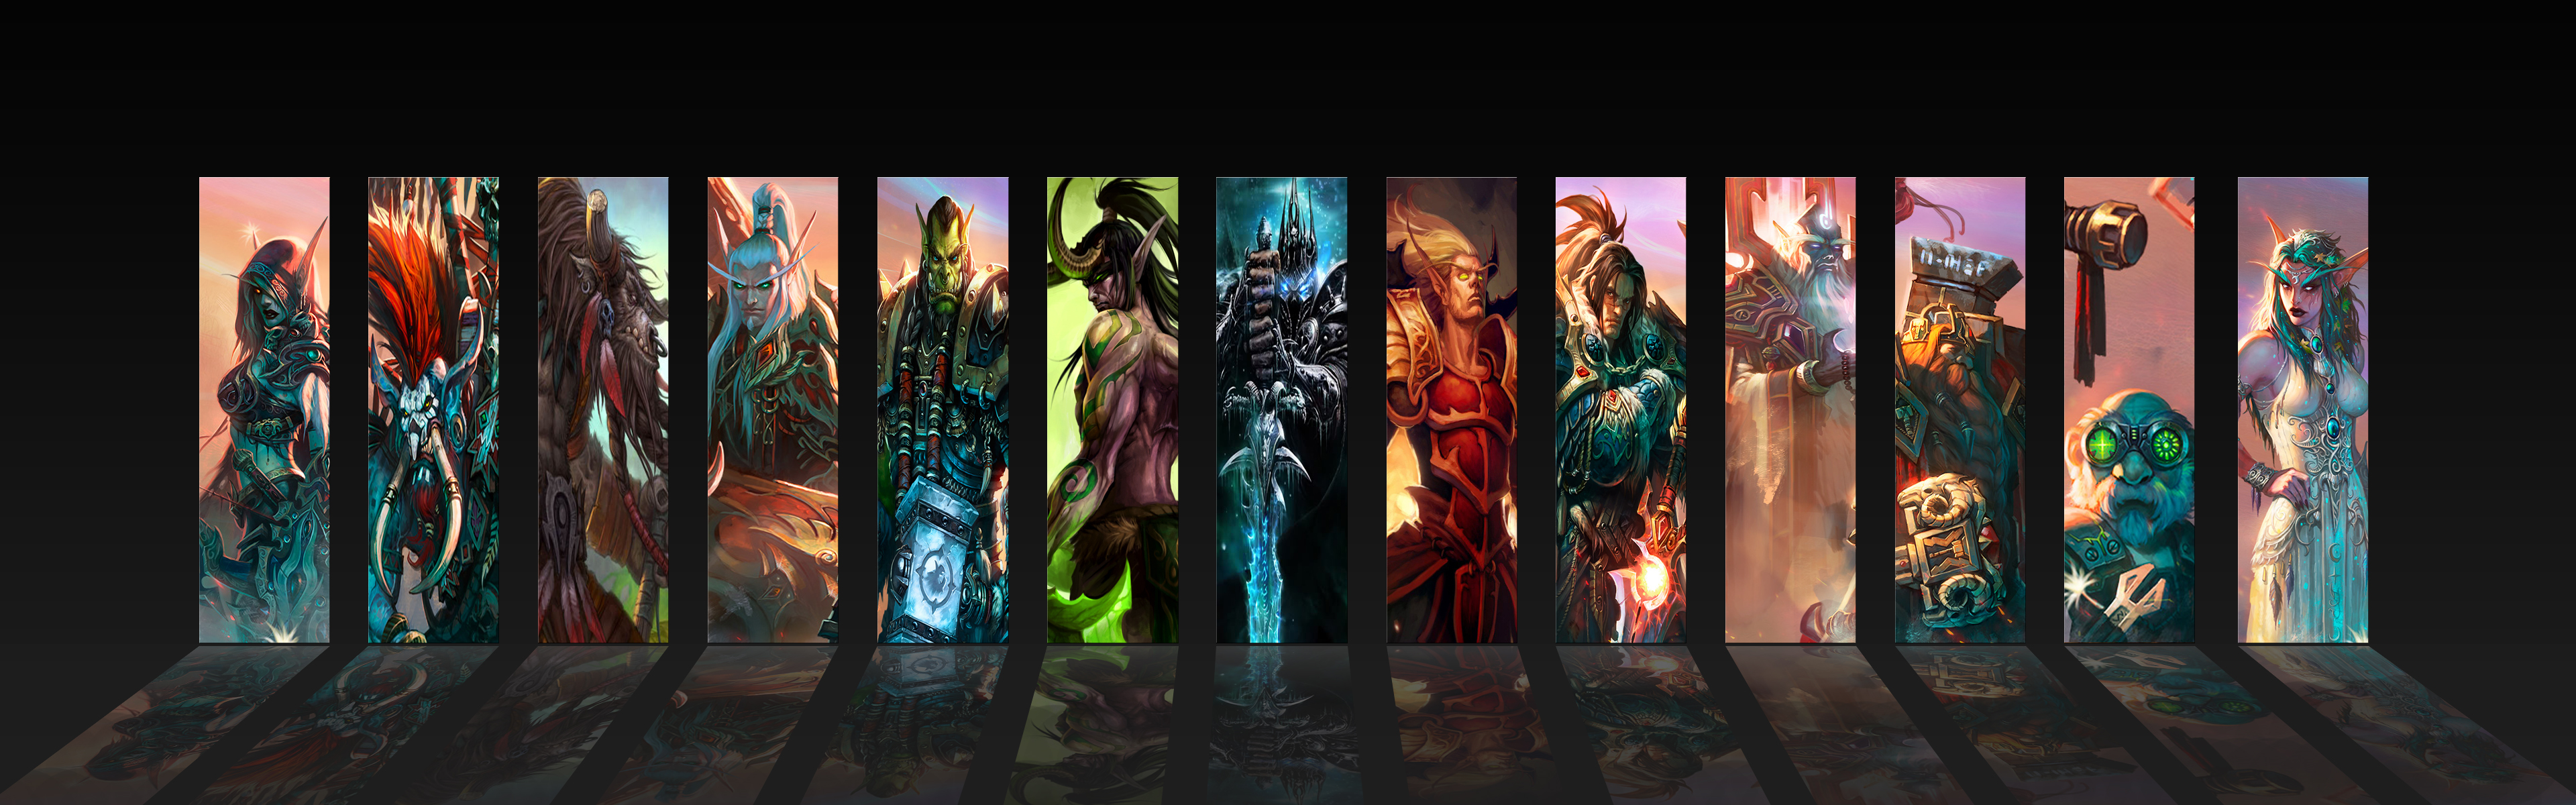 World Of Warcraft Wallpaper 4k - HD Wallpaper 